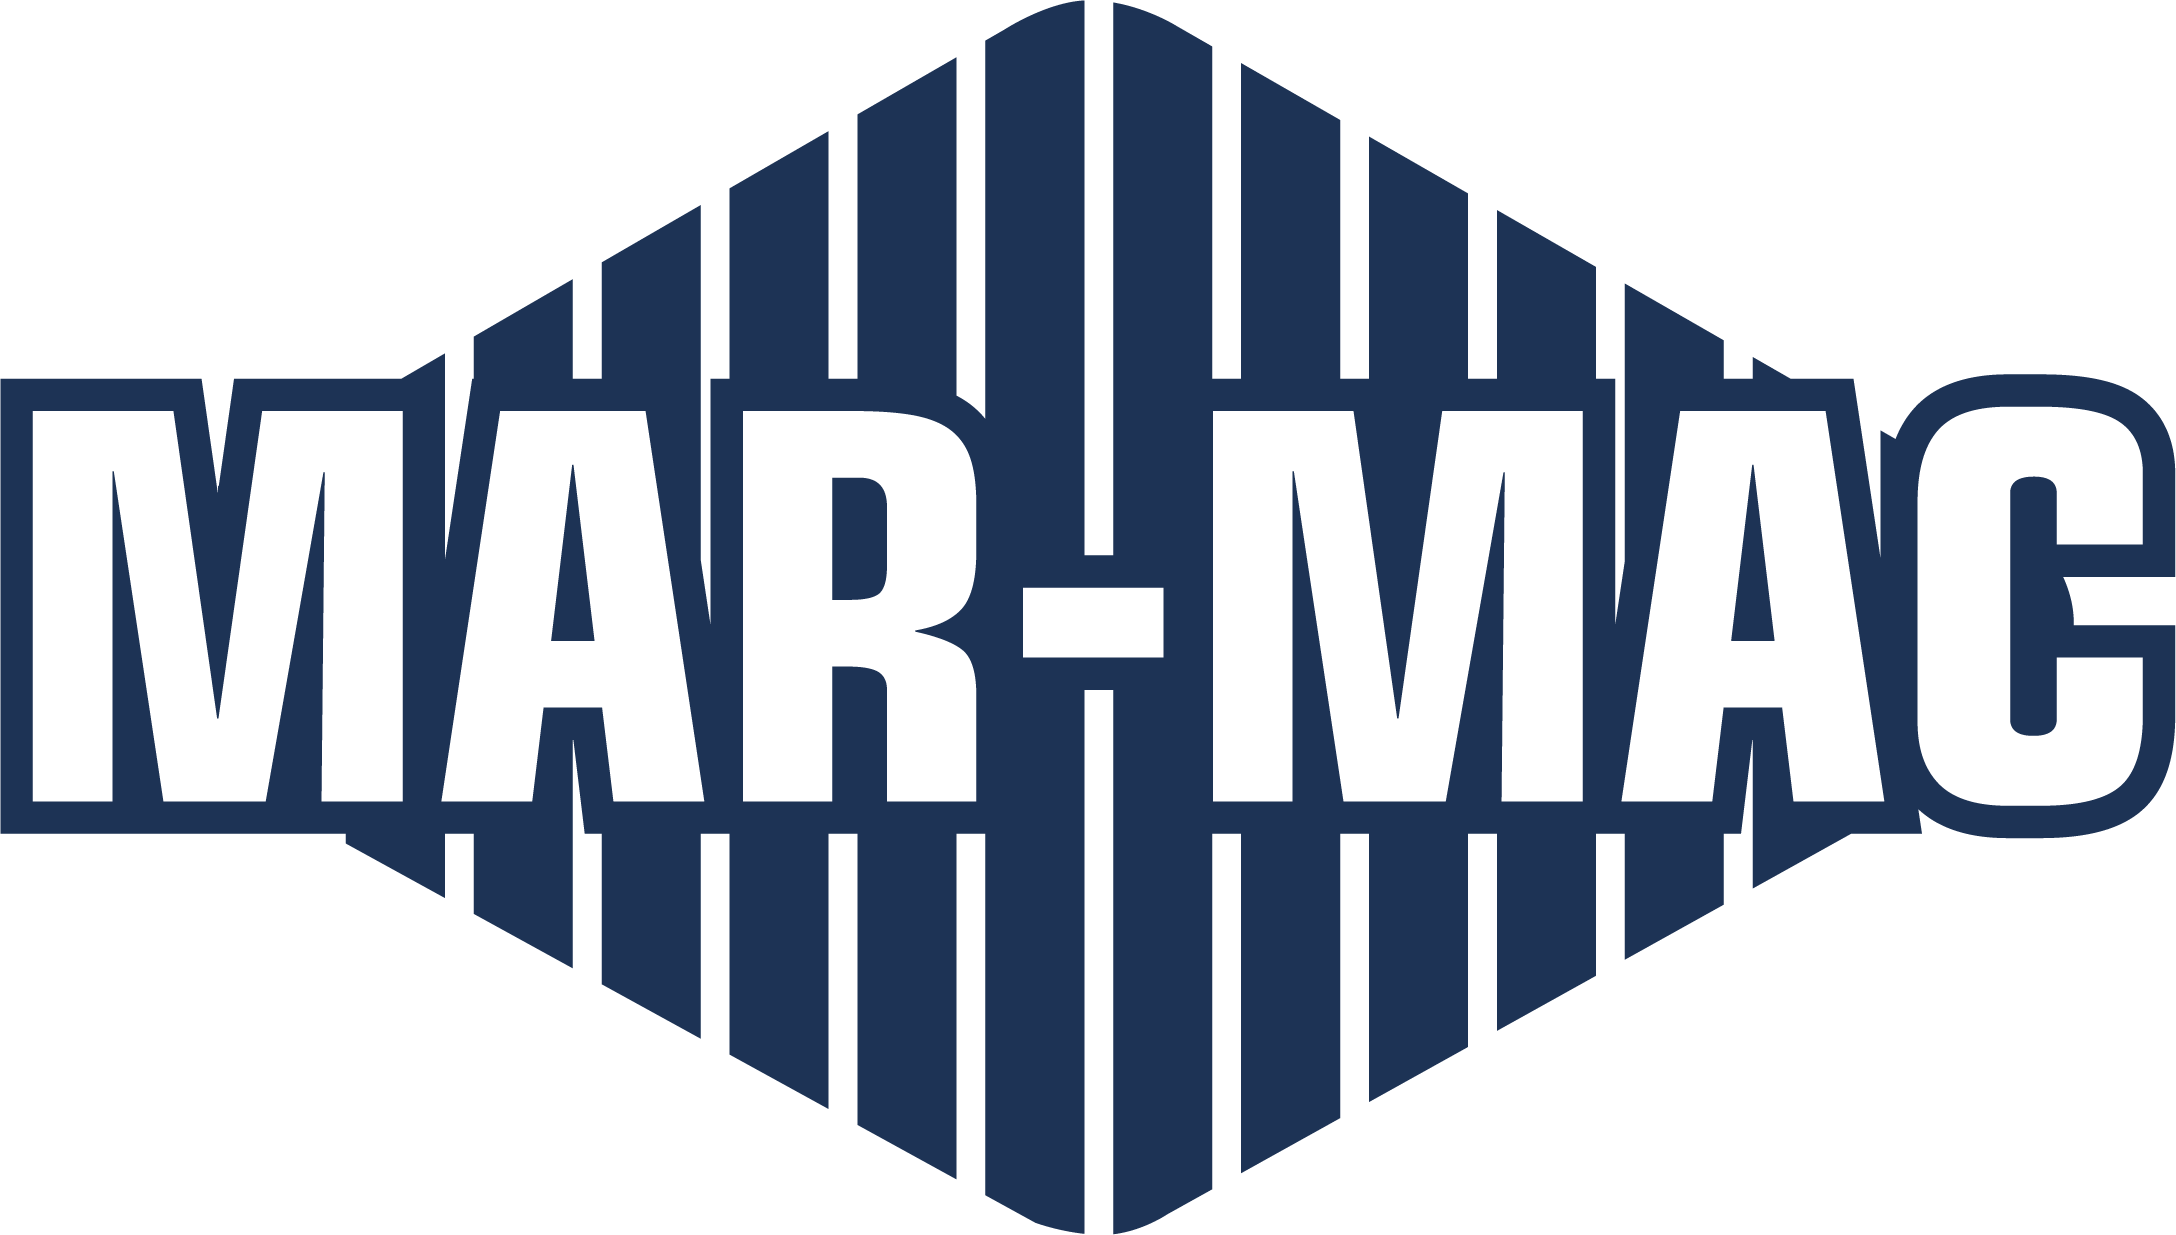 Mar-Mac Logo